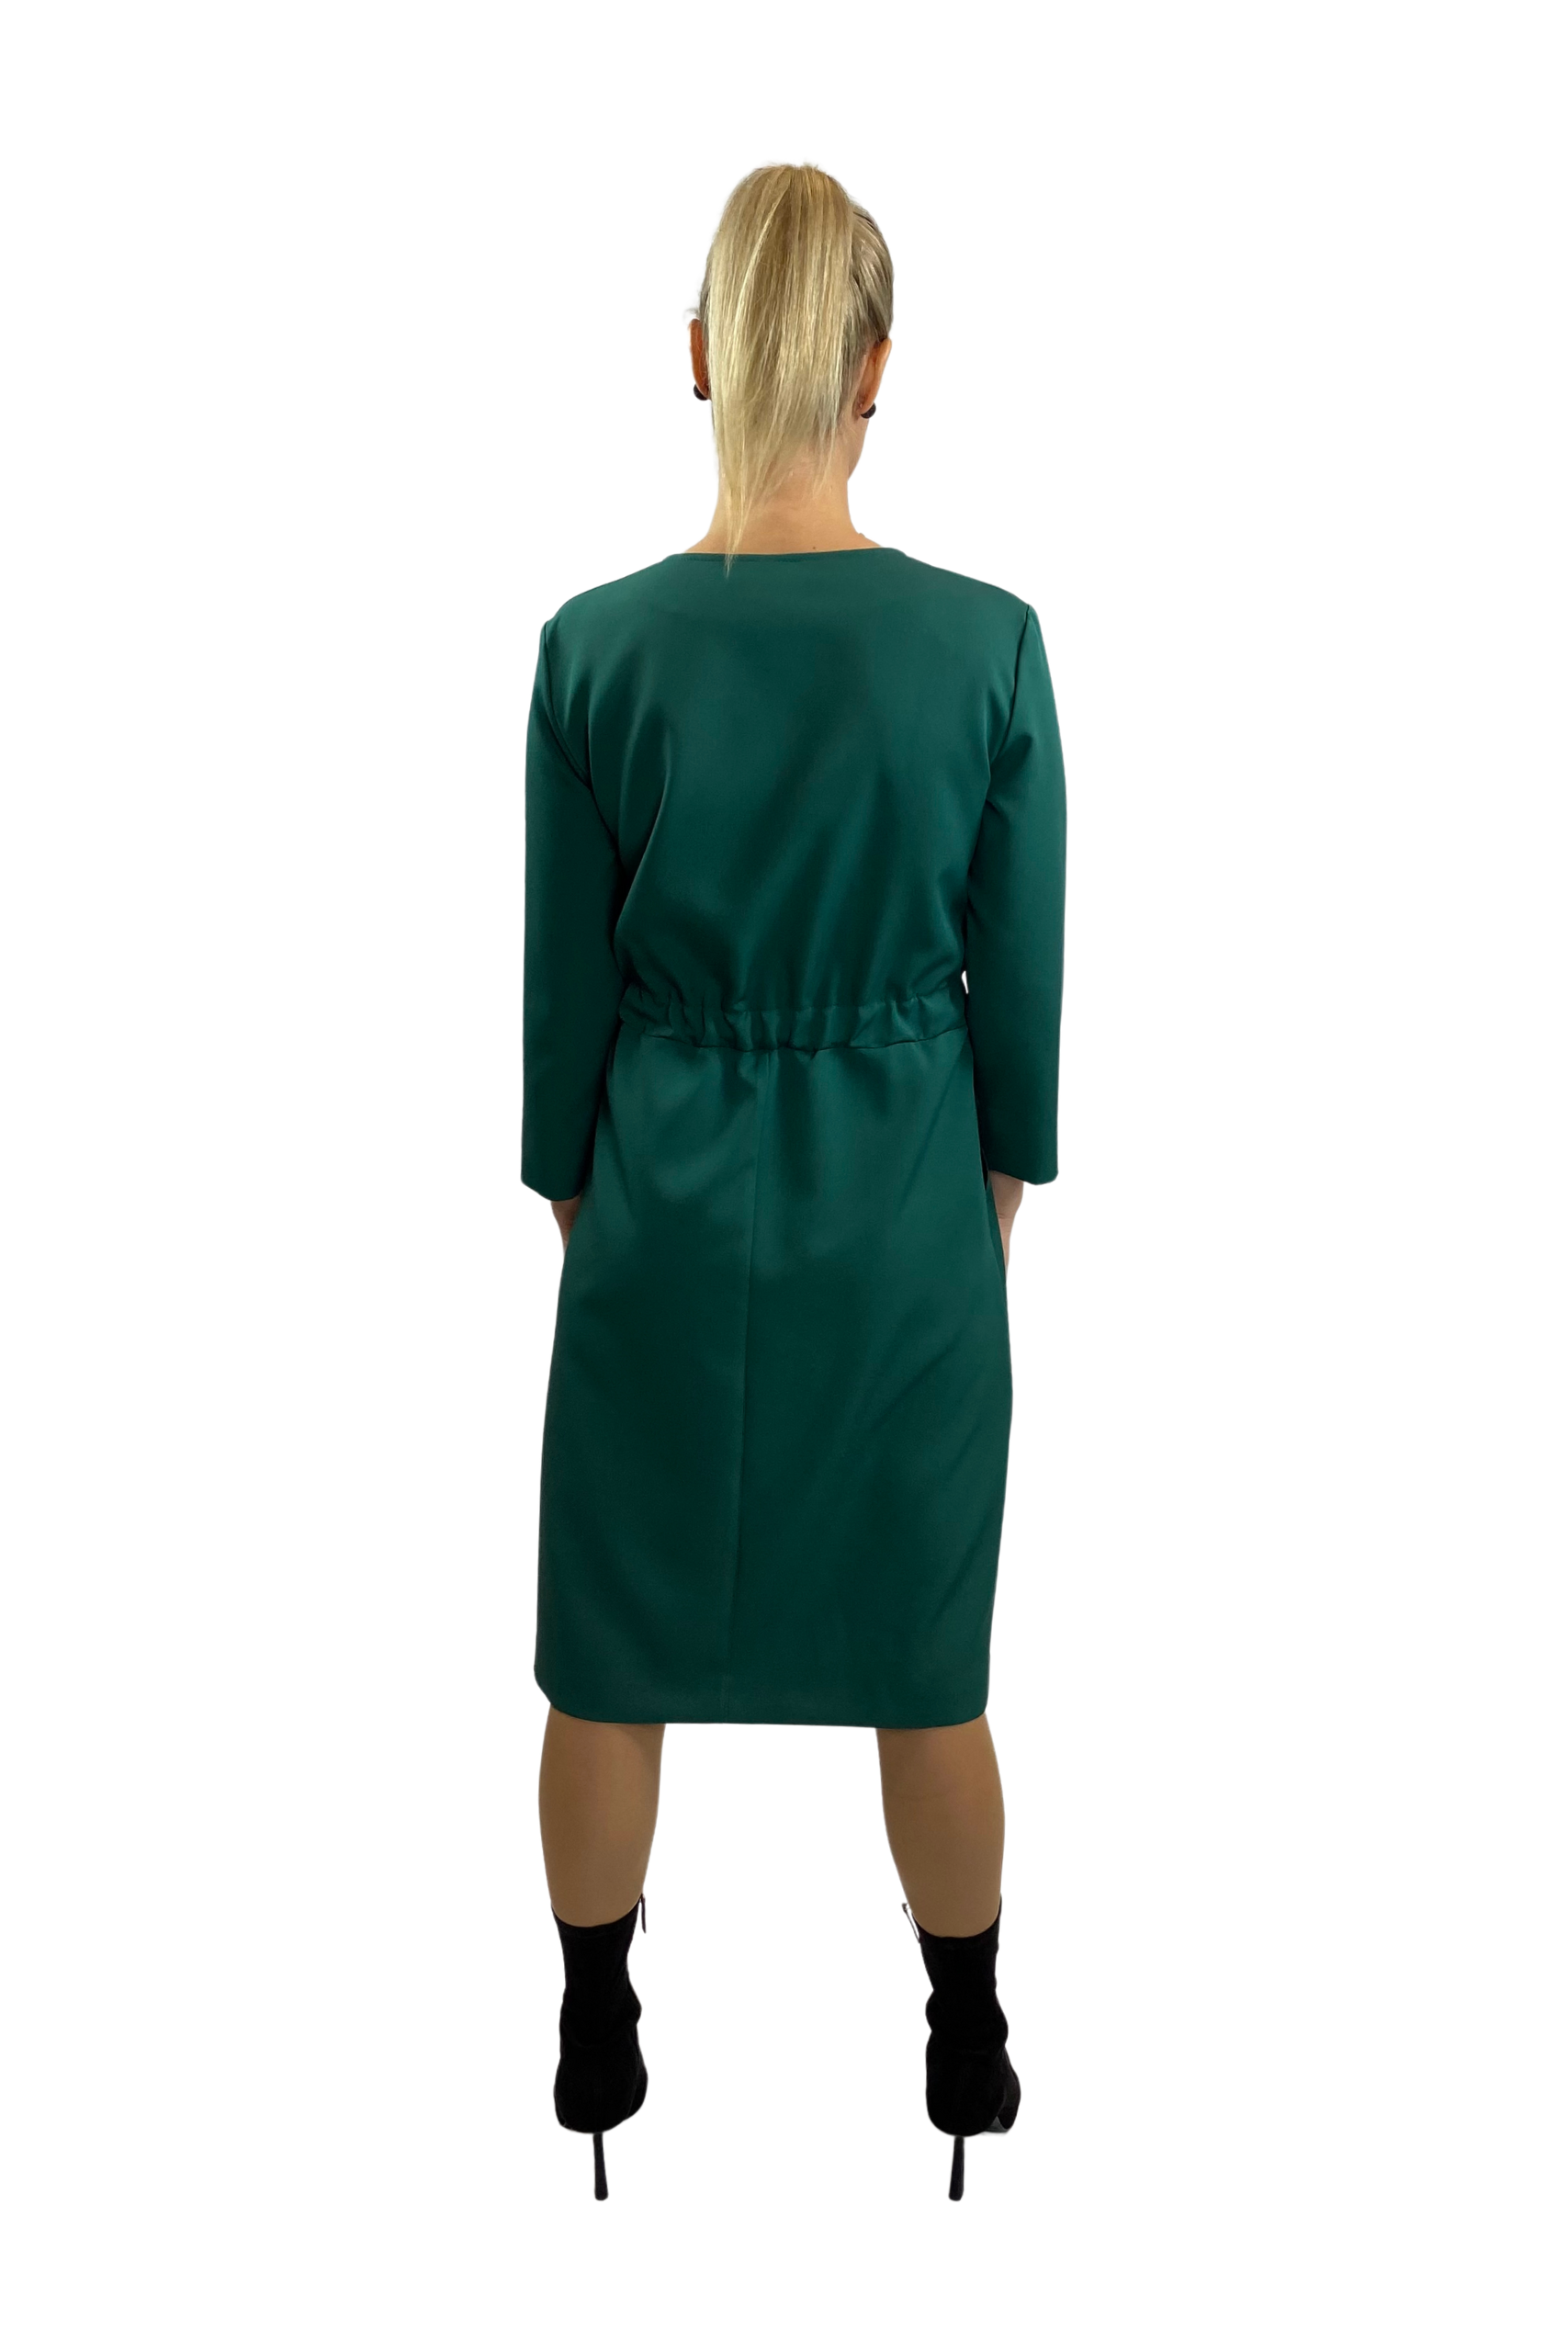 roheline kleit_protten3